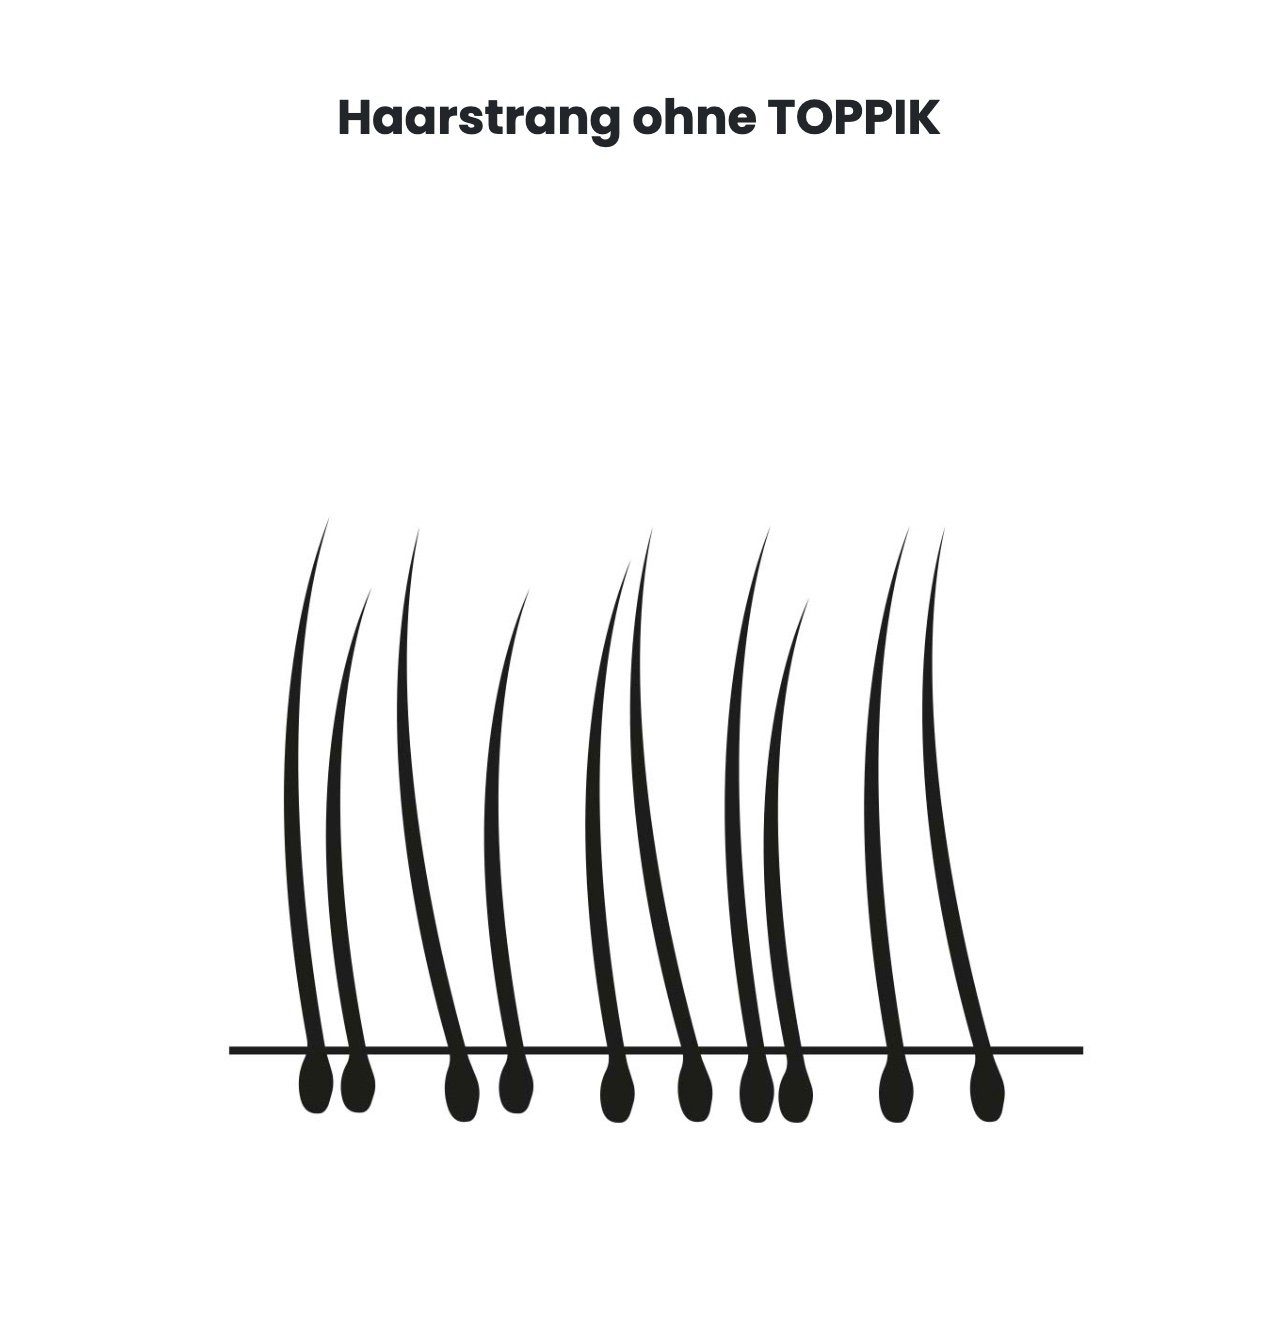 TOPPIK Haarstyling-Set TOPPIK 55 g. - Streuhaar, Haarverdichtung, Schütthaar, Haarfasern, Puder, Hair Fibers Mittelbraun